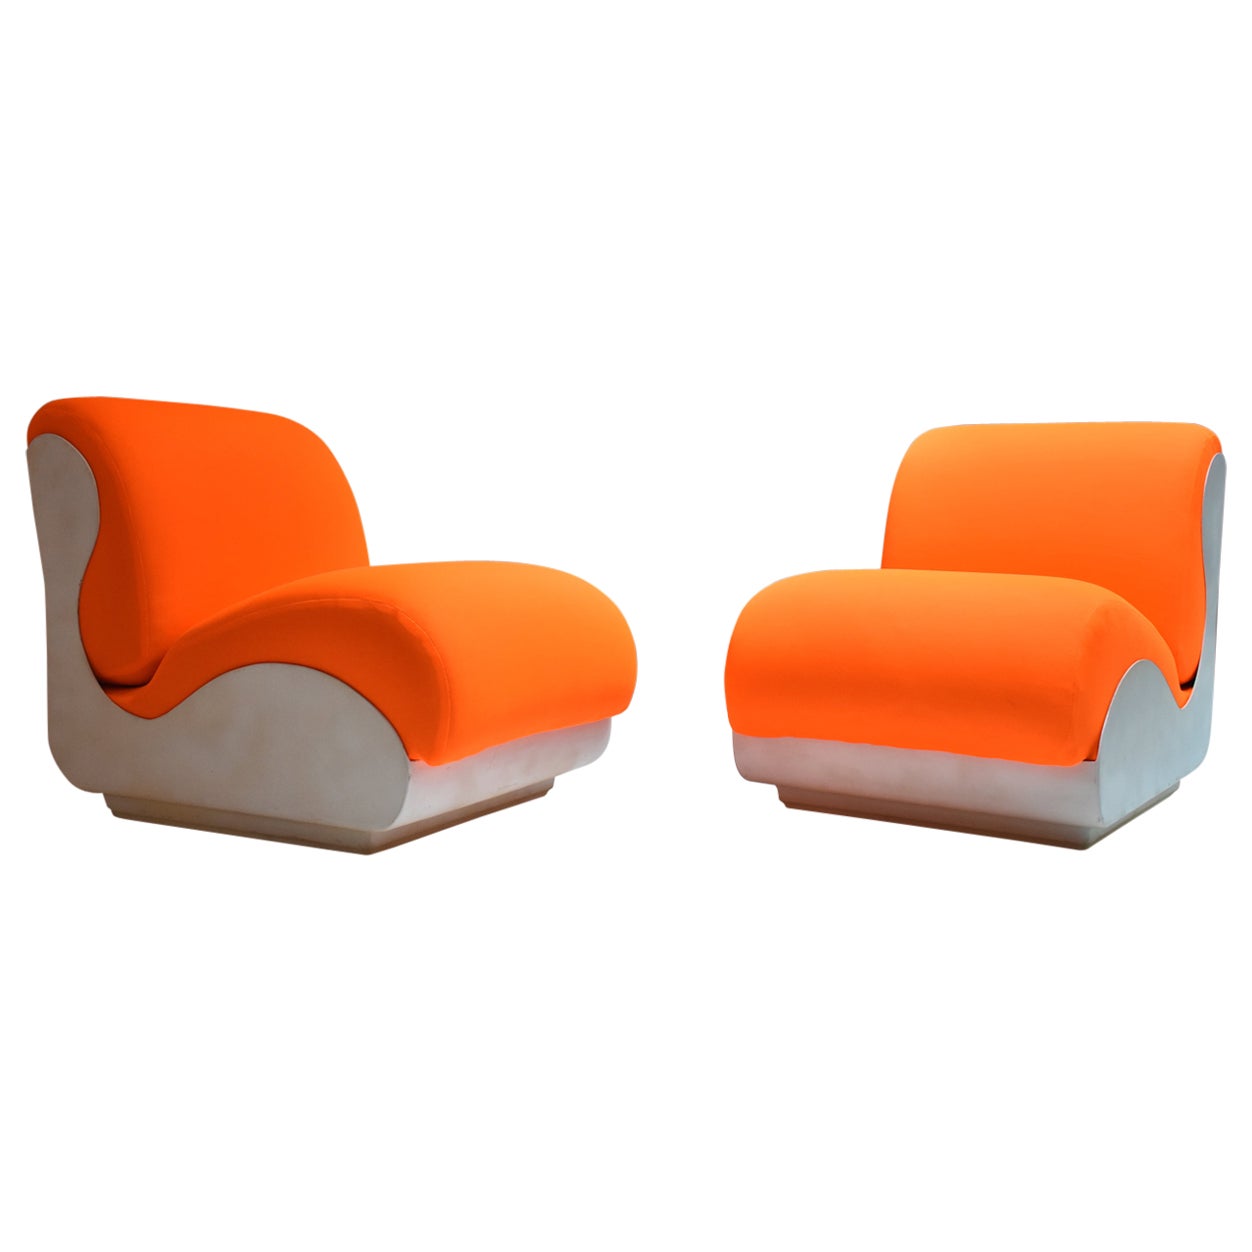 Moderner italienischer Sessel aus der Mitte des Jahrhunderts, 1970er Jahre, 2er-Set, orangefarbene fluoweiße Struktur